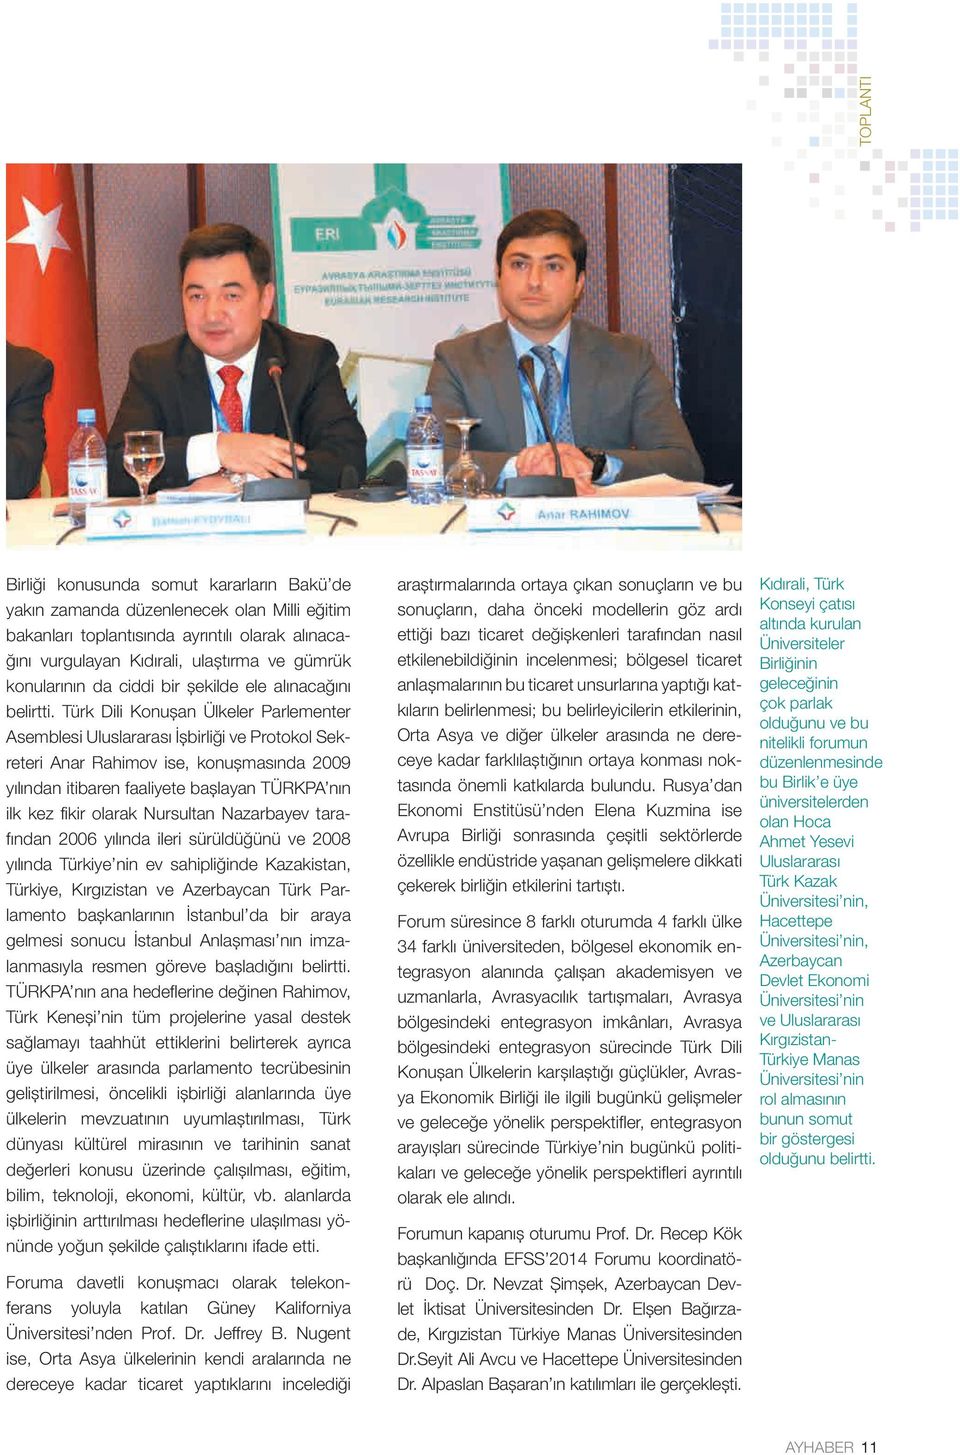 Türk Dili Konuşan Ülkeler Parlementer Asemblesi Uluslararası İşbirliği ve Protokol Sekreteri Anar Rahimov ise, konuşmasında 2009 yılından itibaren faaliyete başlayan TÜRKPA nın ilk kez fikir olarak